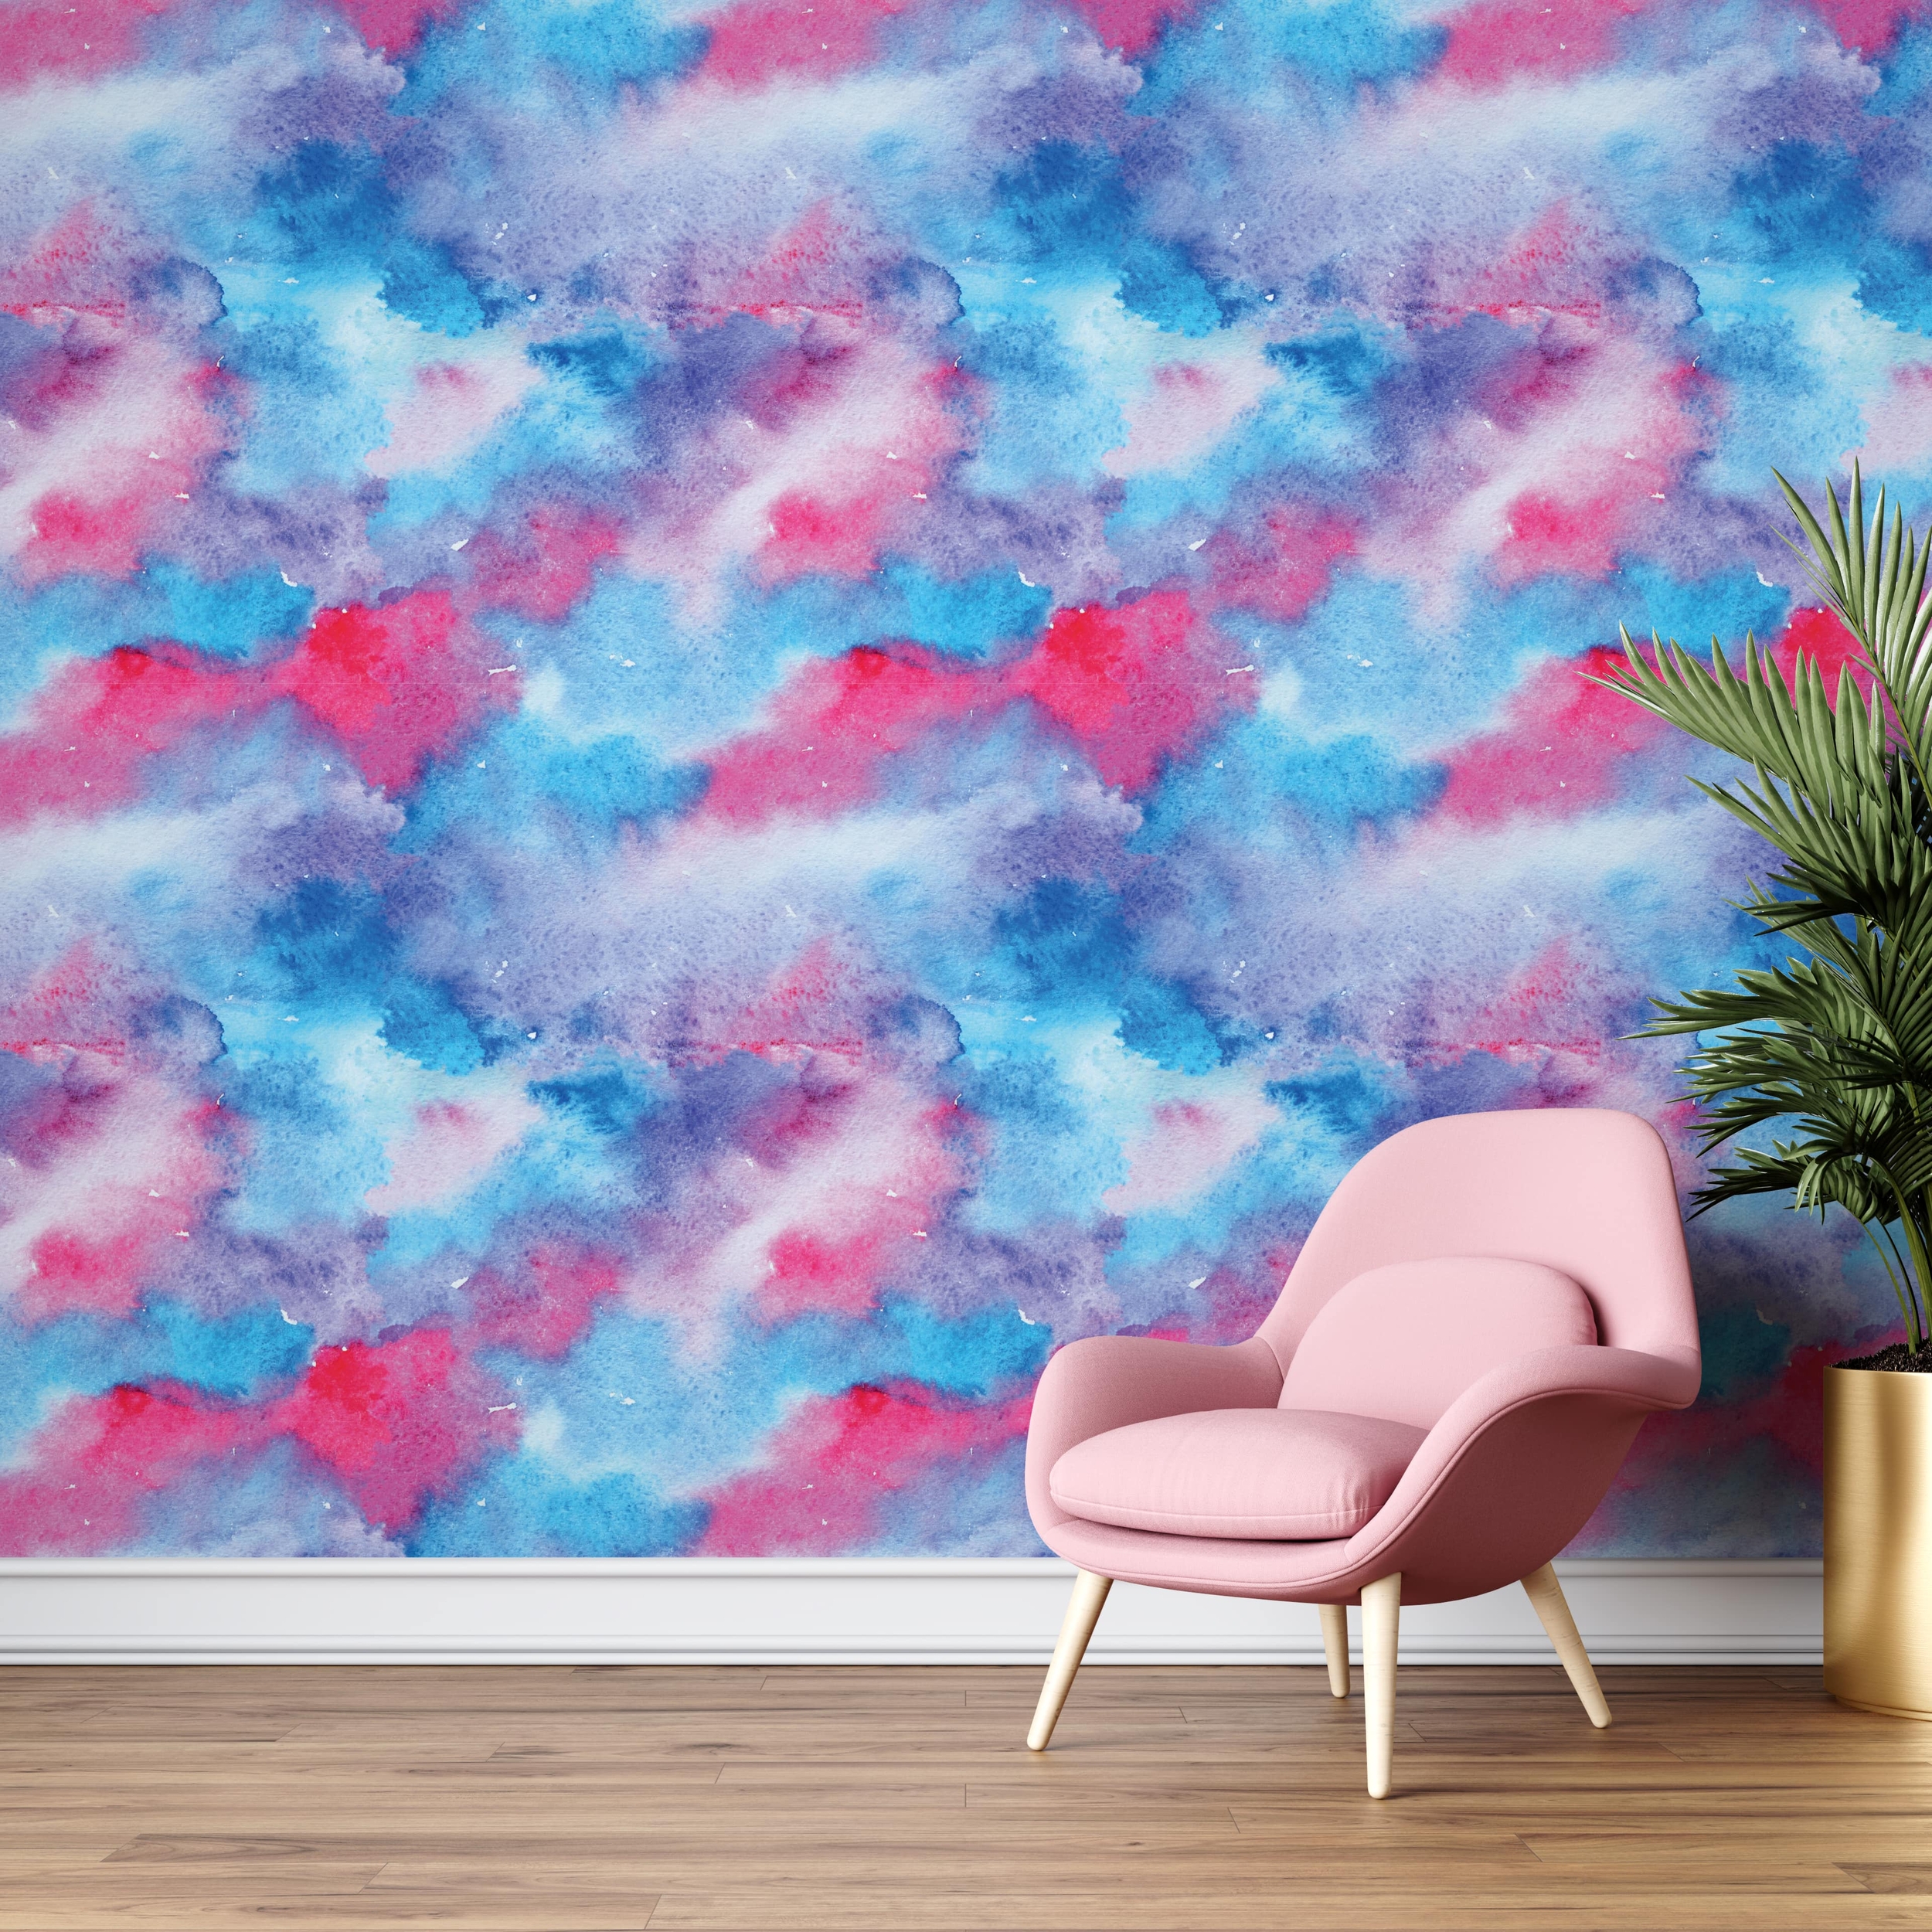 PP70-mur-papier-peint-adhesif-decoratif-revetement-vinyle-motifs-aquarelle-dégradé-bleu-et-rose-renovation-meuble-mur-min